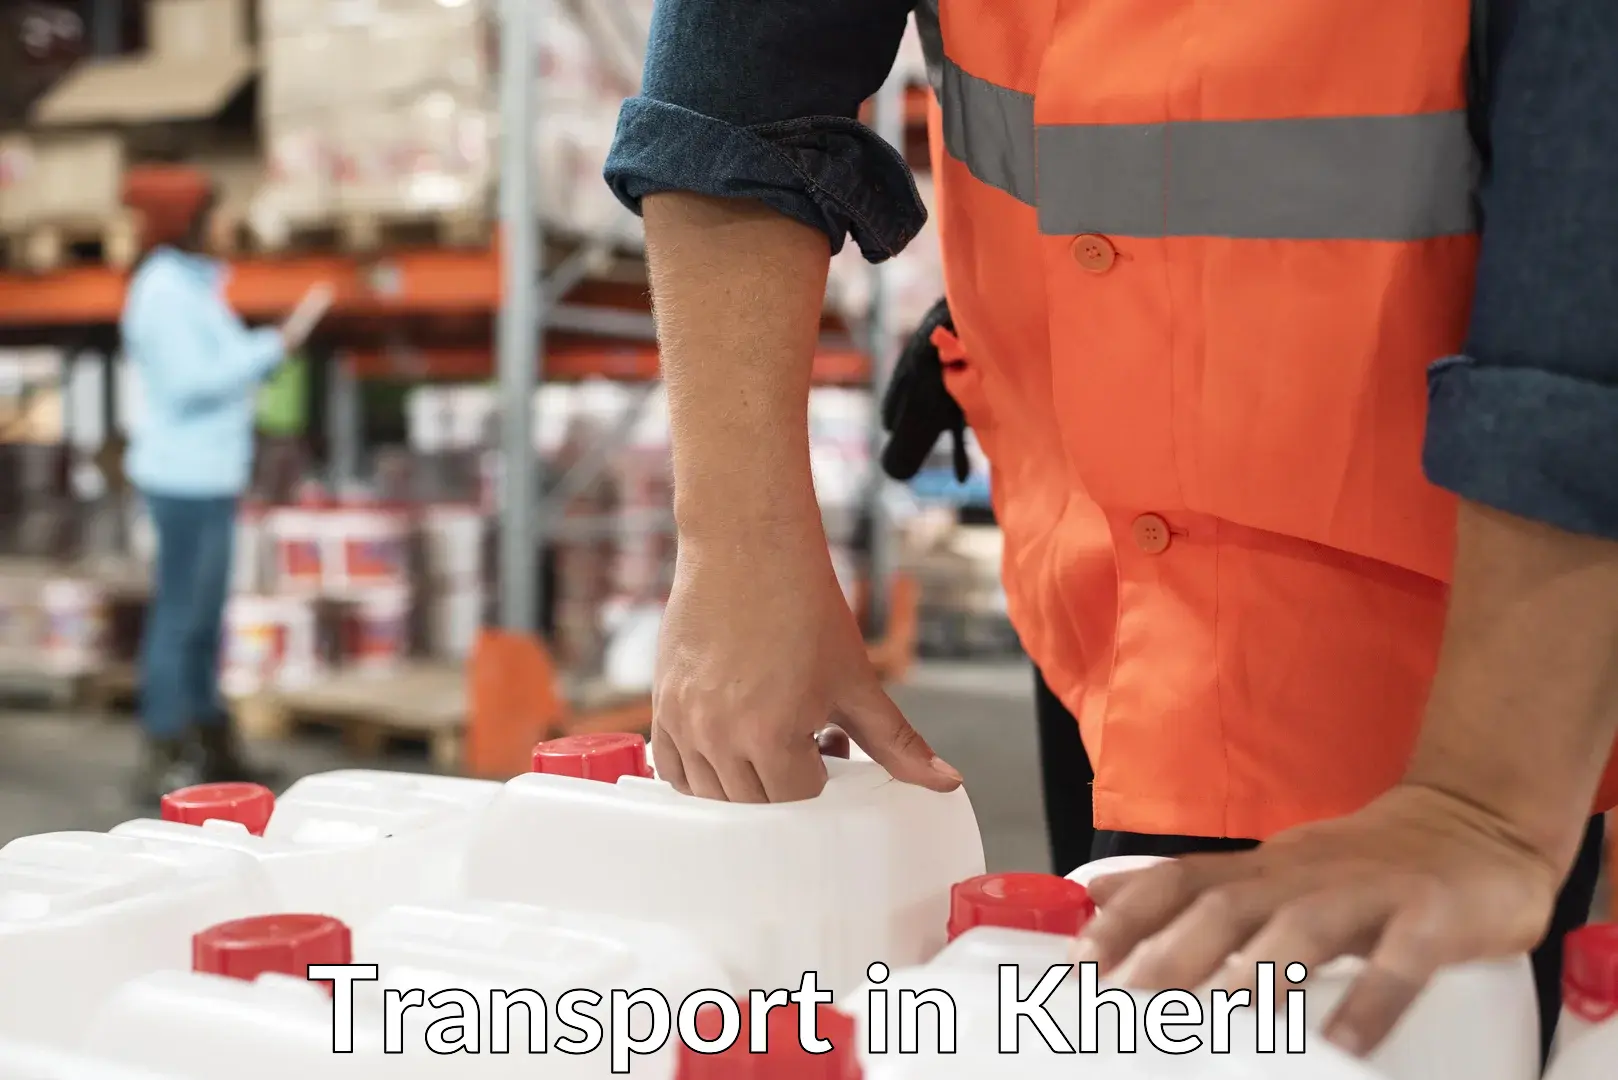 Nearest transport service in Kherli